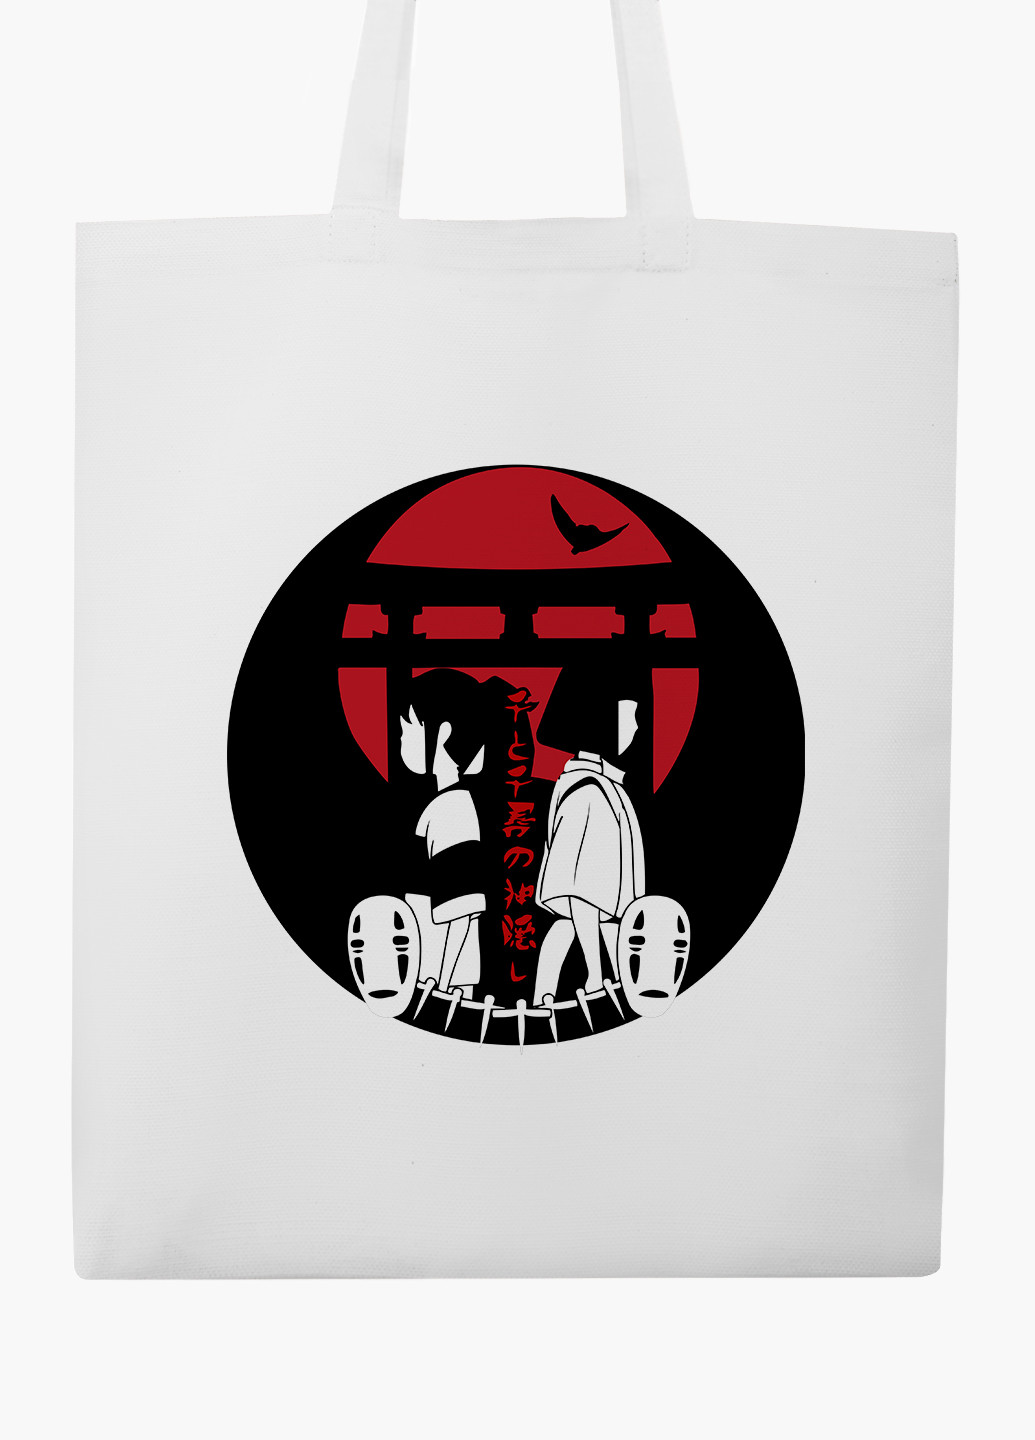 Эко сумка шоппер белая Тихиро Огино Сэн и Хаку Унесённые призраками (Spirited Away) (9227-2649-WT-2) экосумка шопер 41*35 см MobiPrint (219151241)